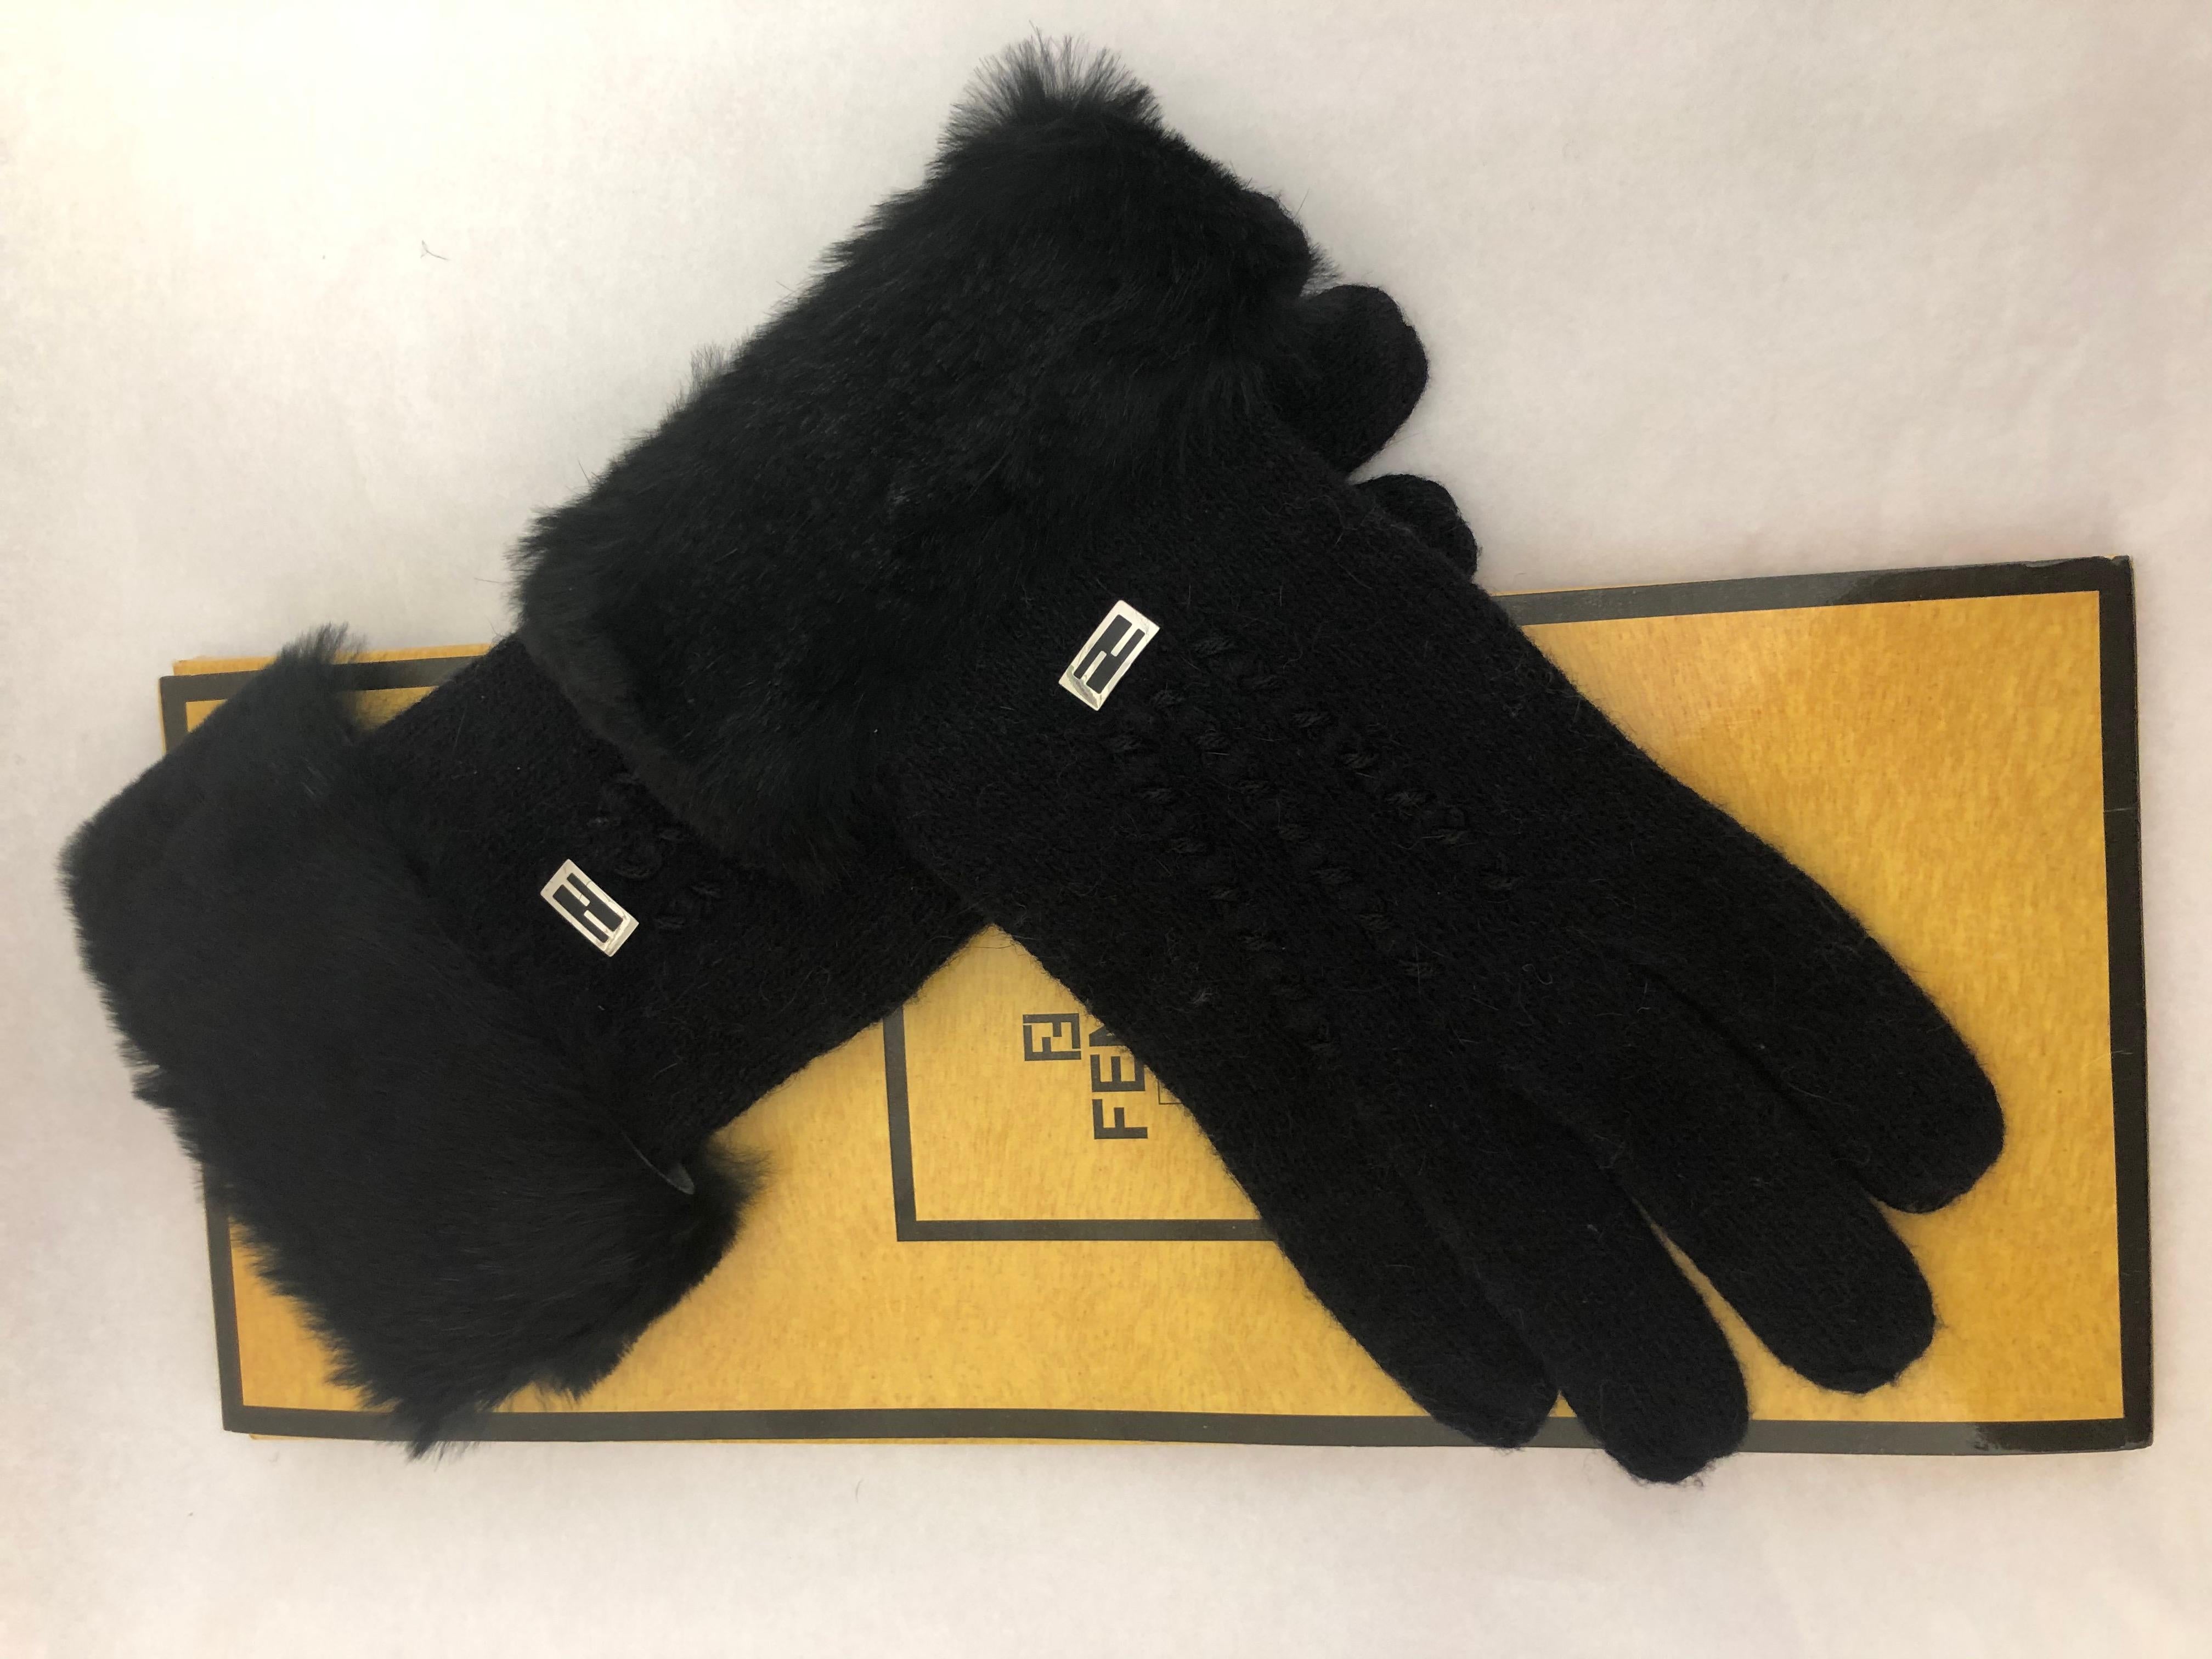 Black Fendi Lambs Wool/Angora w/Rabbit Fur Cuffs Gloves 71/2-8. In original package